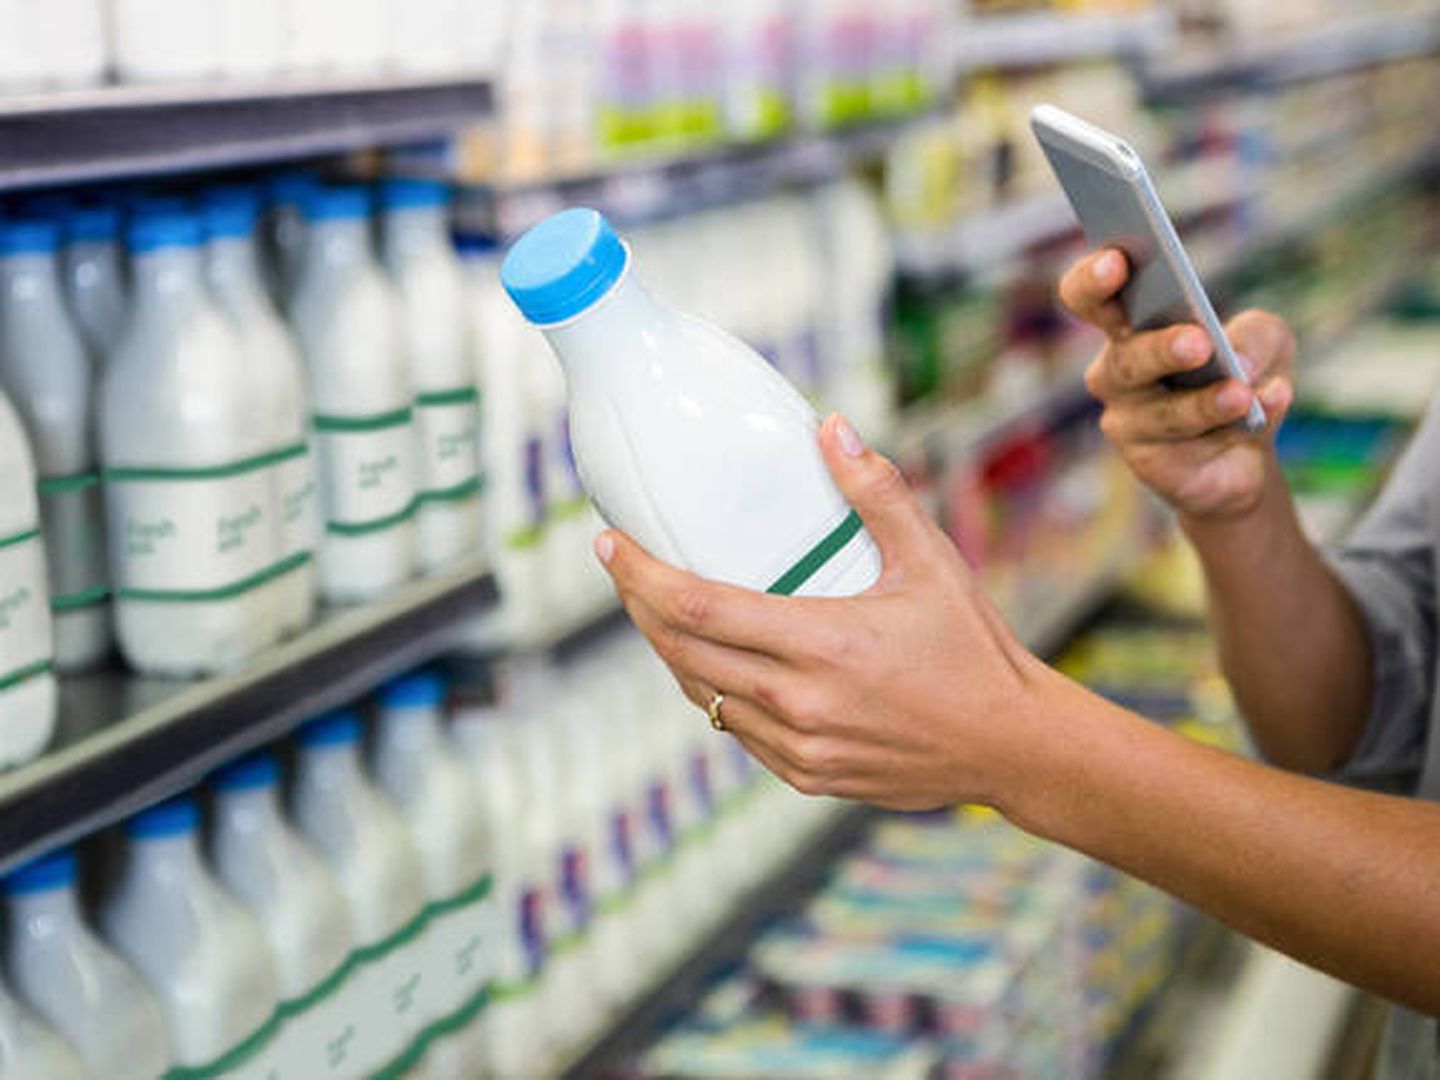 El sector lácteo concentra la mayoría de las multas de AICA (Agricultura) por mala praxis.